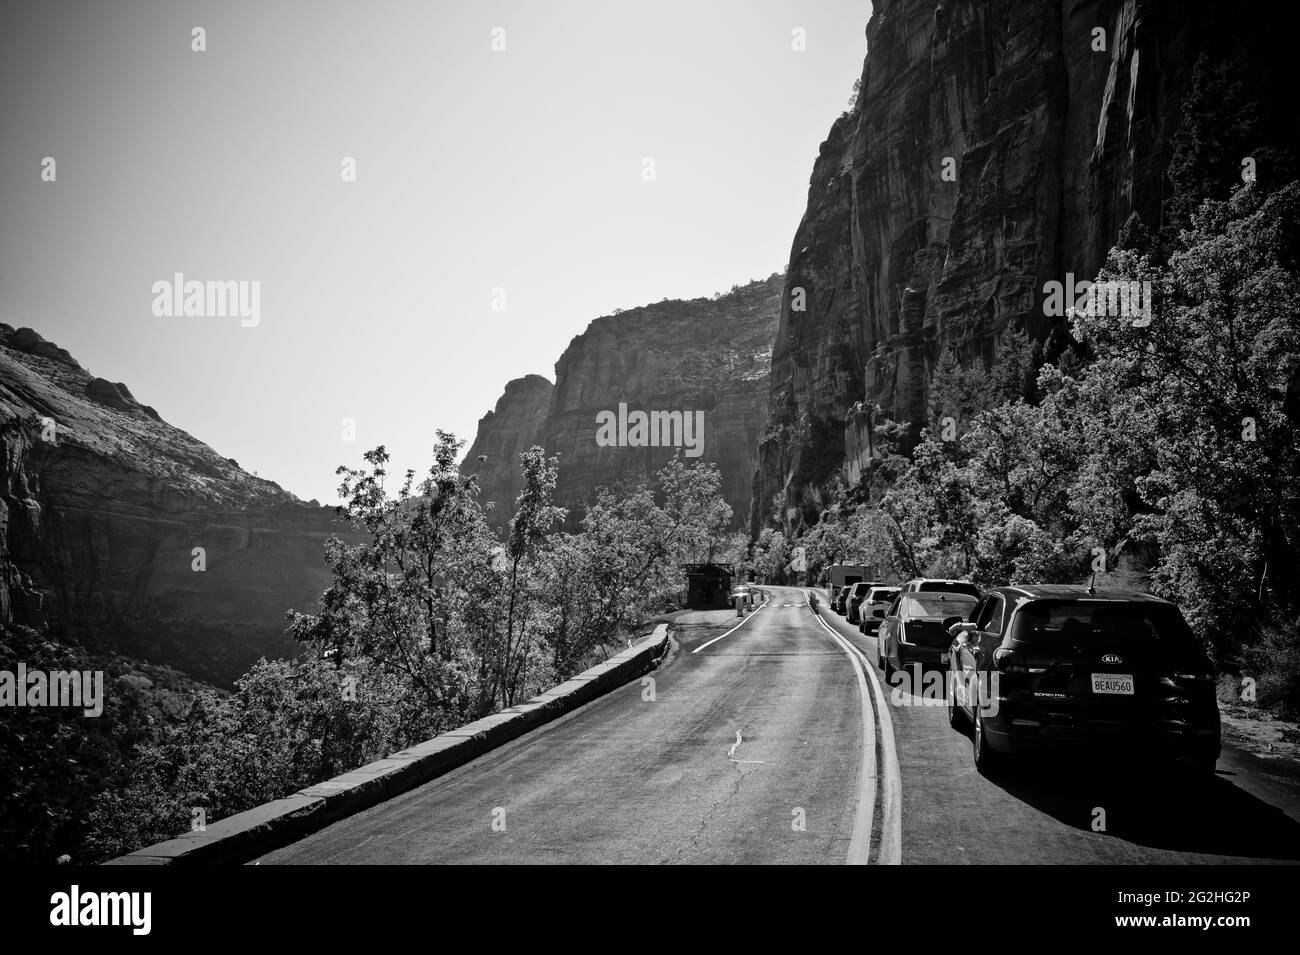 Autopista Mount Carmel - La cola antes del túnel Zion Mount Carmel - Parque Nacional Zion, Utah, Estados Unidos Foto de stock